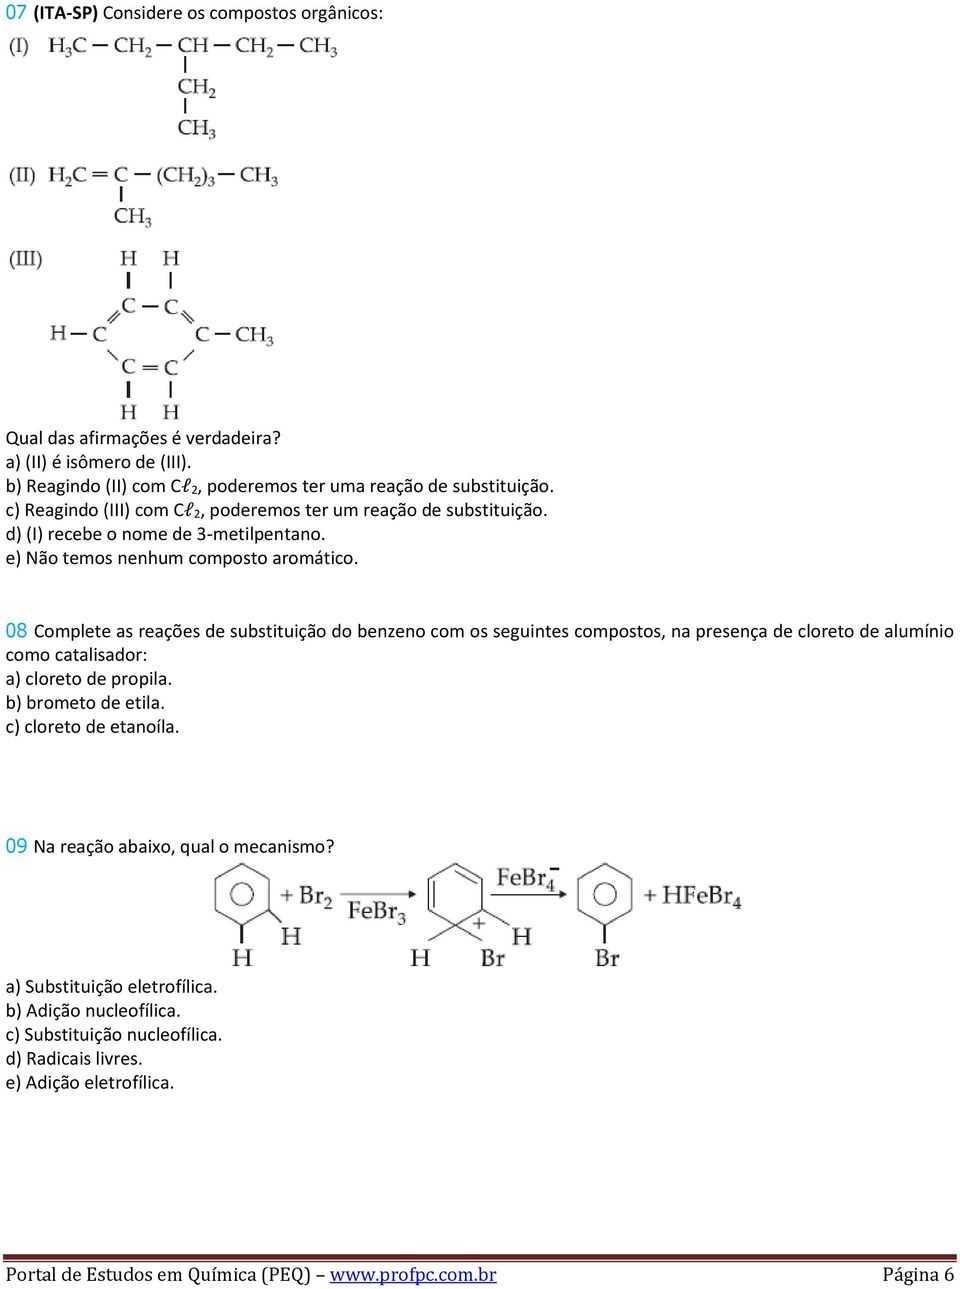 08 Complete as reações de substituição do benzeno com os seguintes compostos, na presença de cloreto de alumínio como catalisador: a) cloreto de propila. b) brometo de etila.